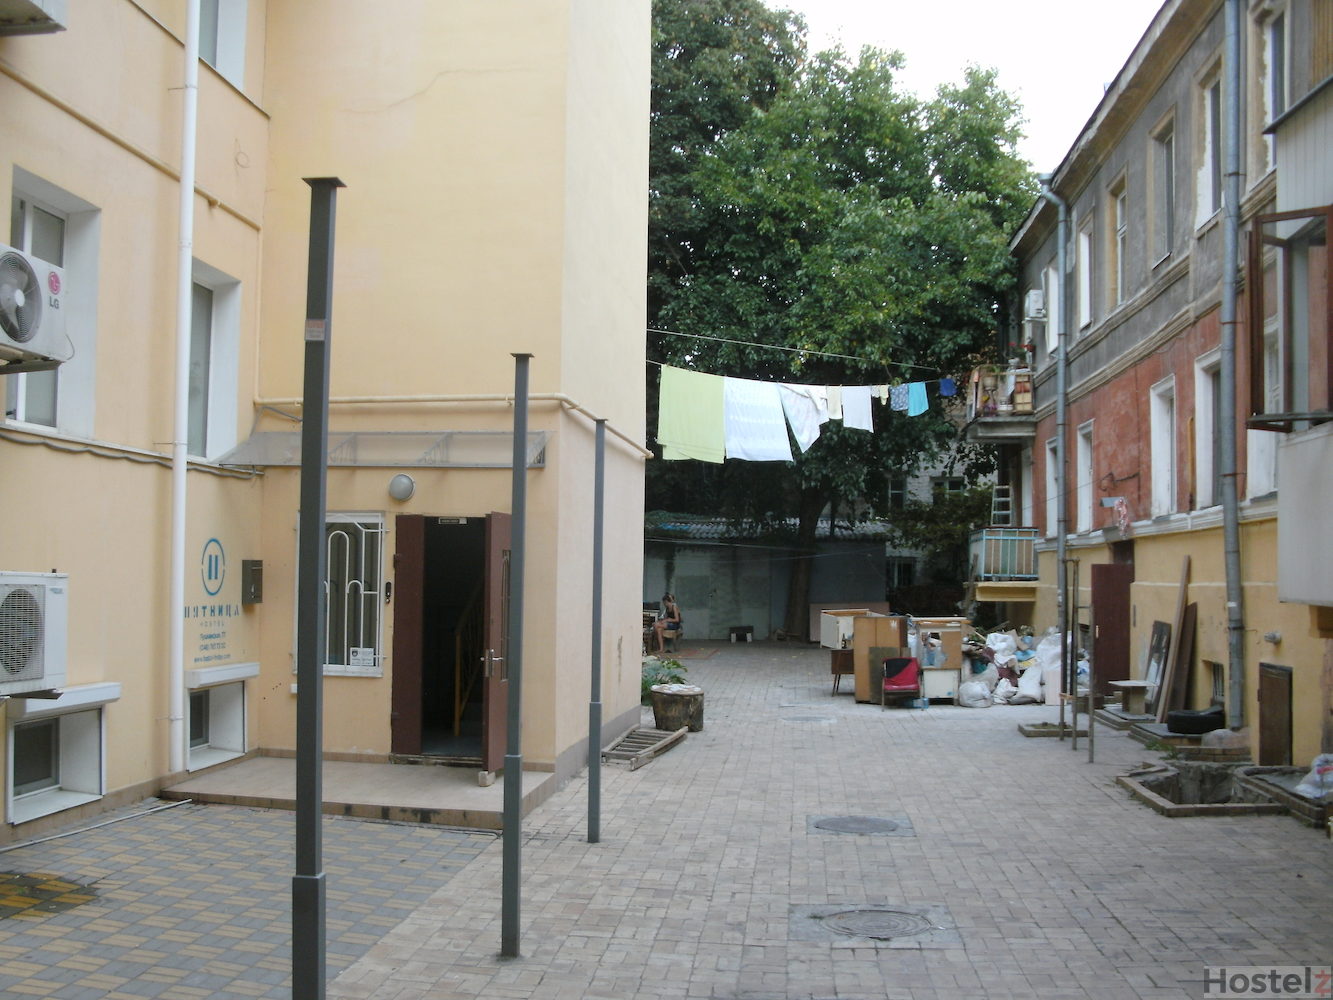 Friday Hostel, Odessa